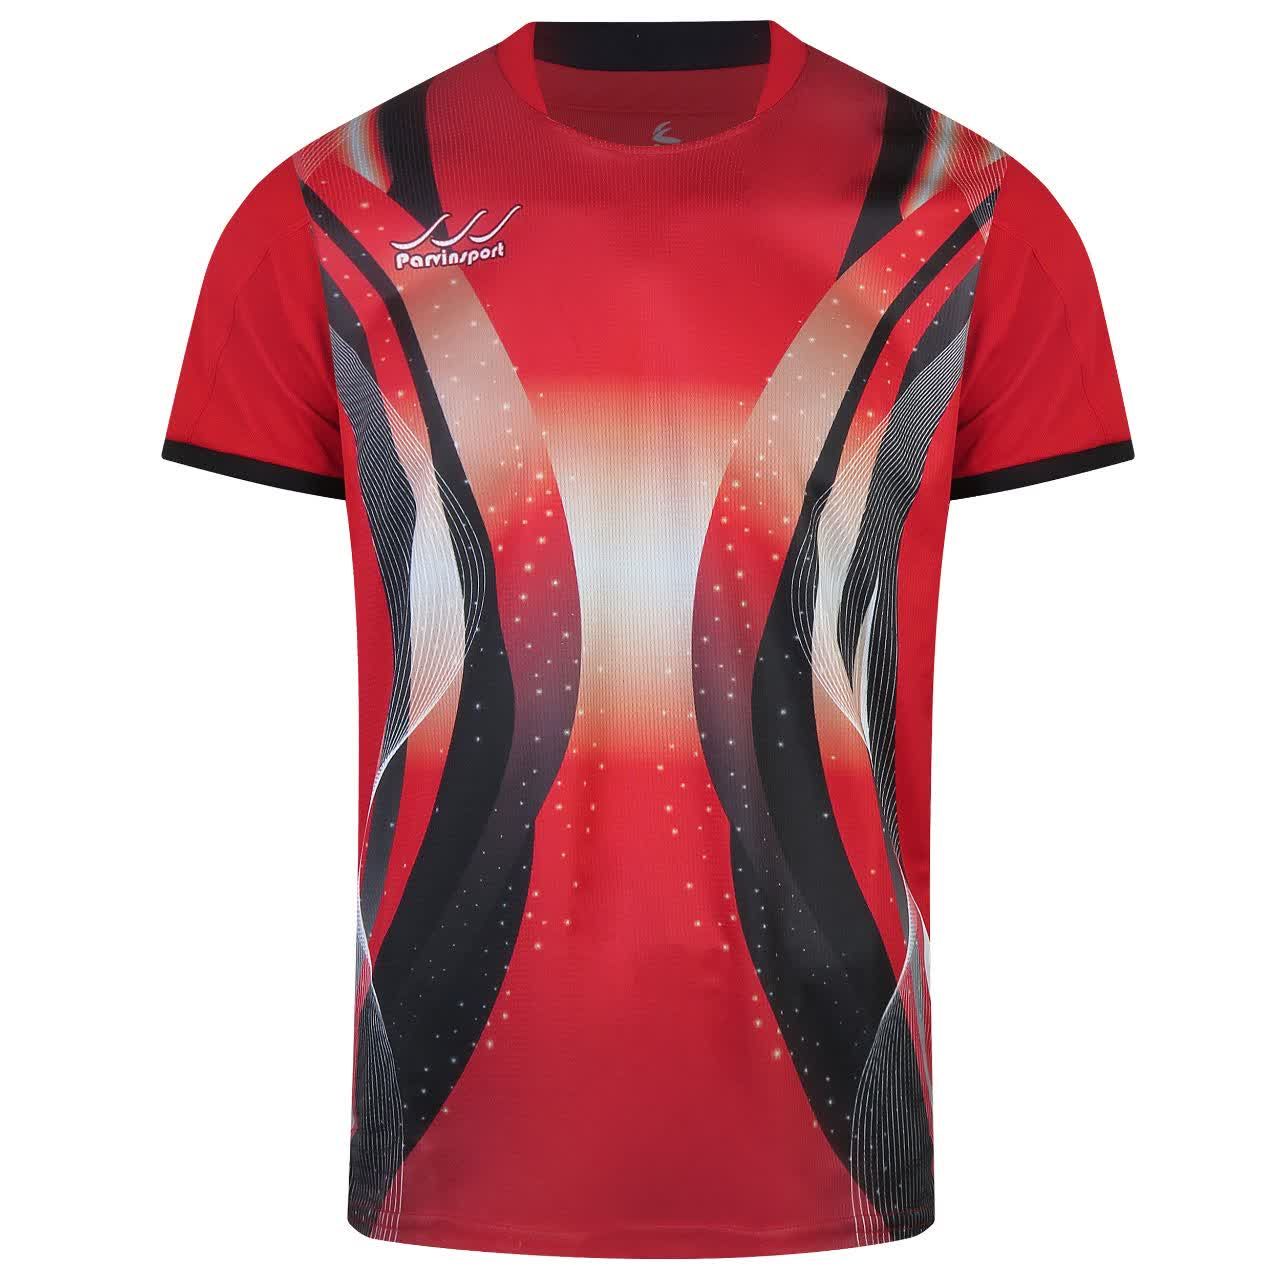 ست تی شرت و شلوارک ورزشی مردانه کالای ورزشی پروین مدل a.s.i.x.6 رنگ قرمز -  - 2